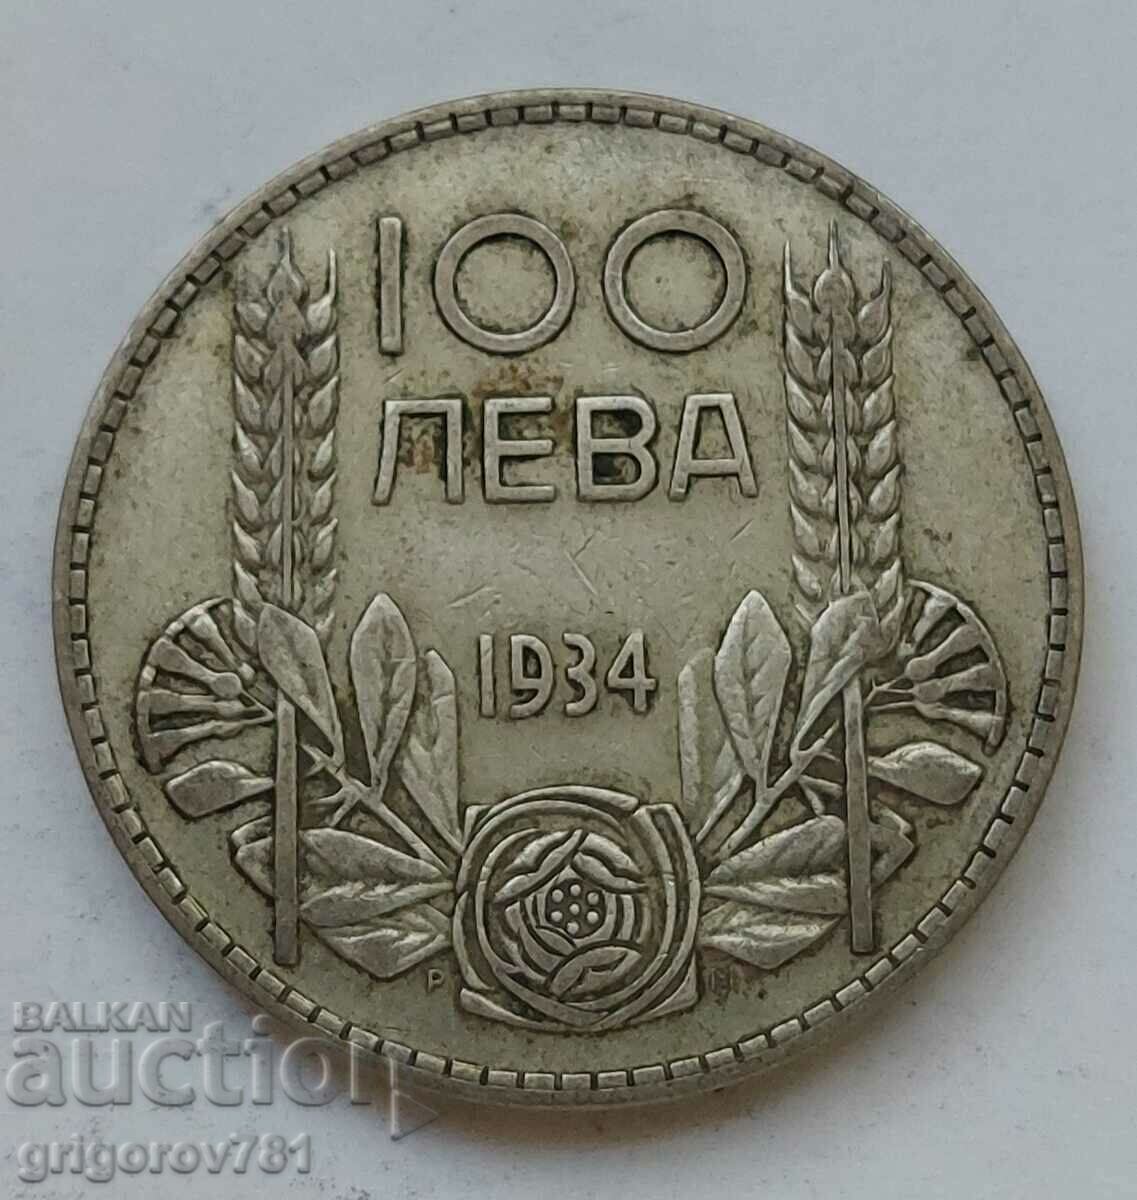 Ασήμι 100 λέβα Βουλγαρία 1934 - ασημένιο νόμισμα #164